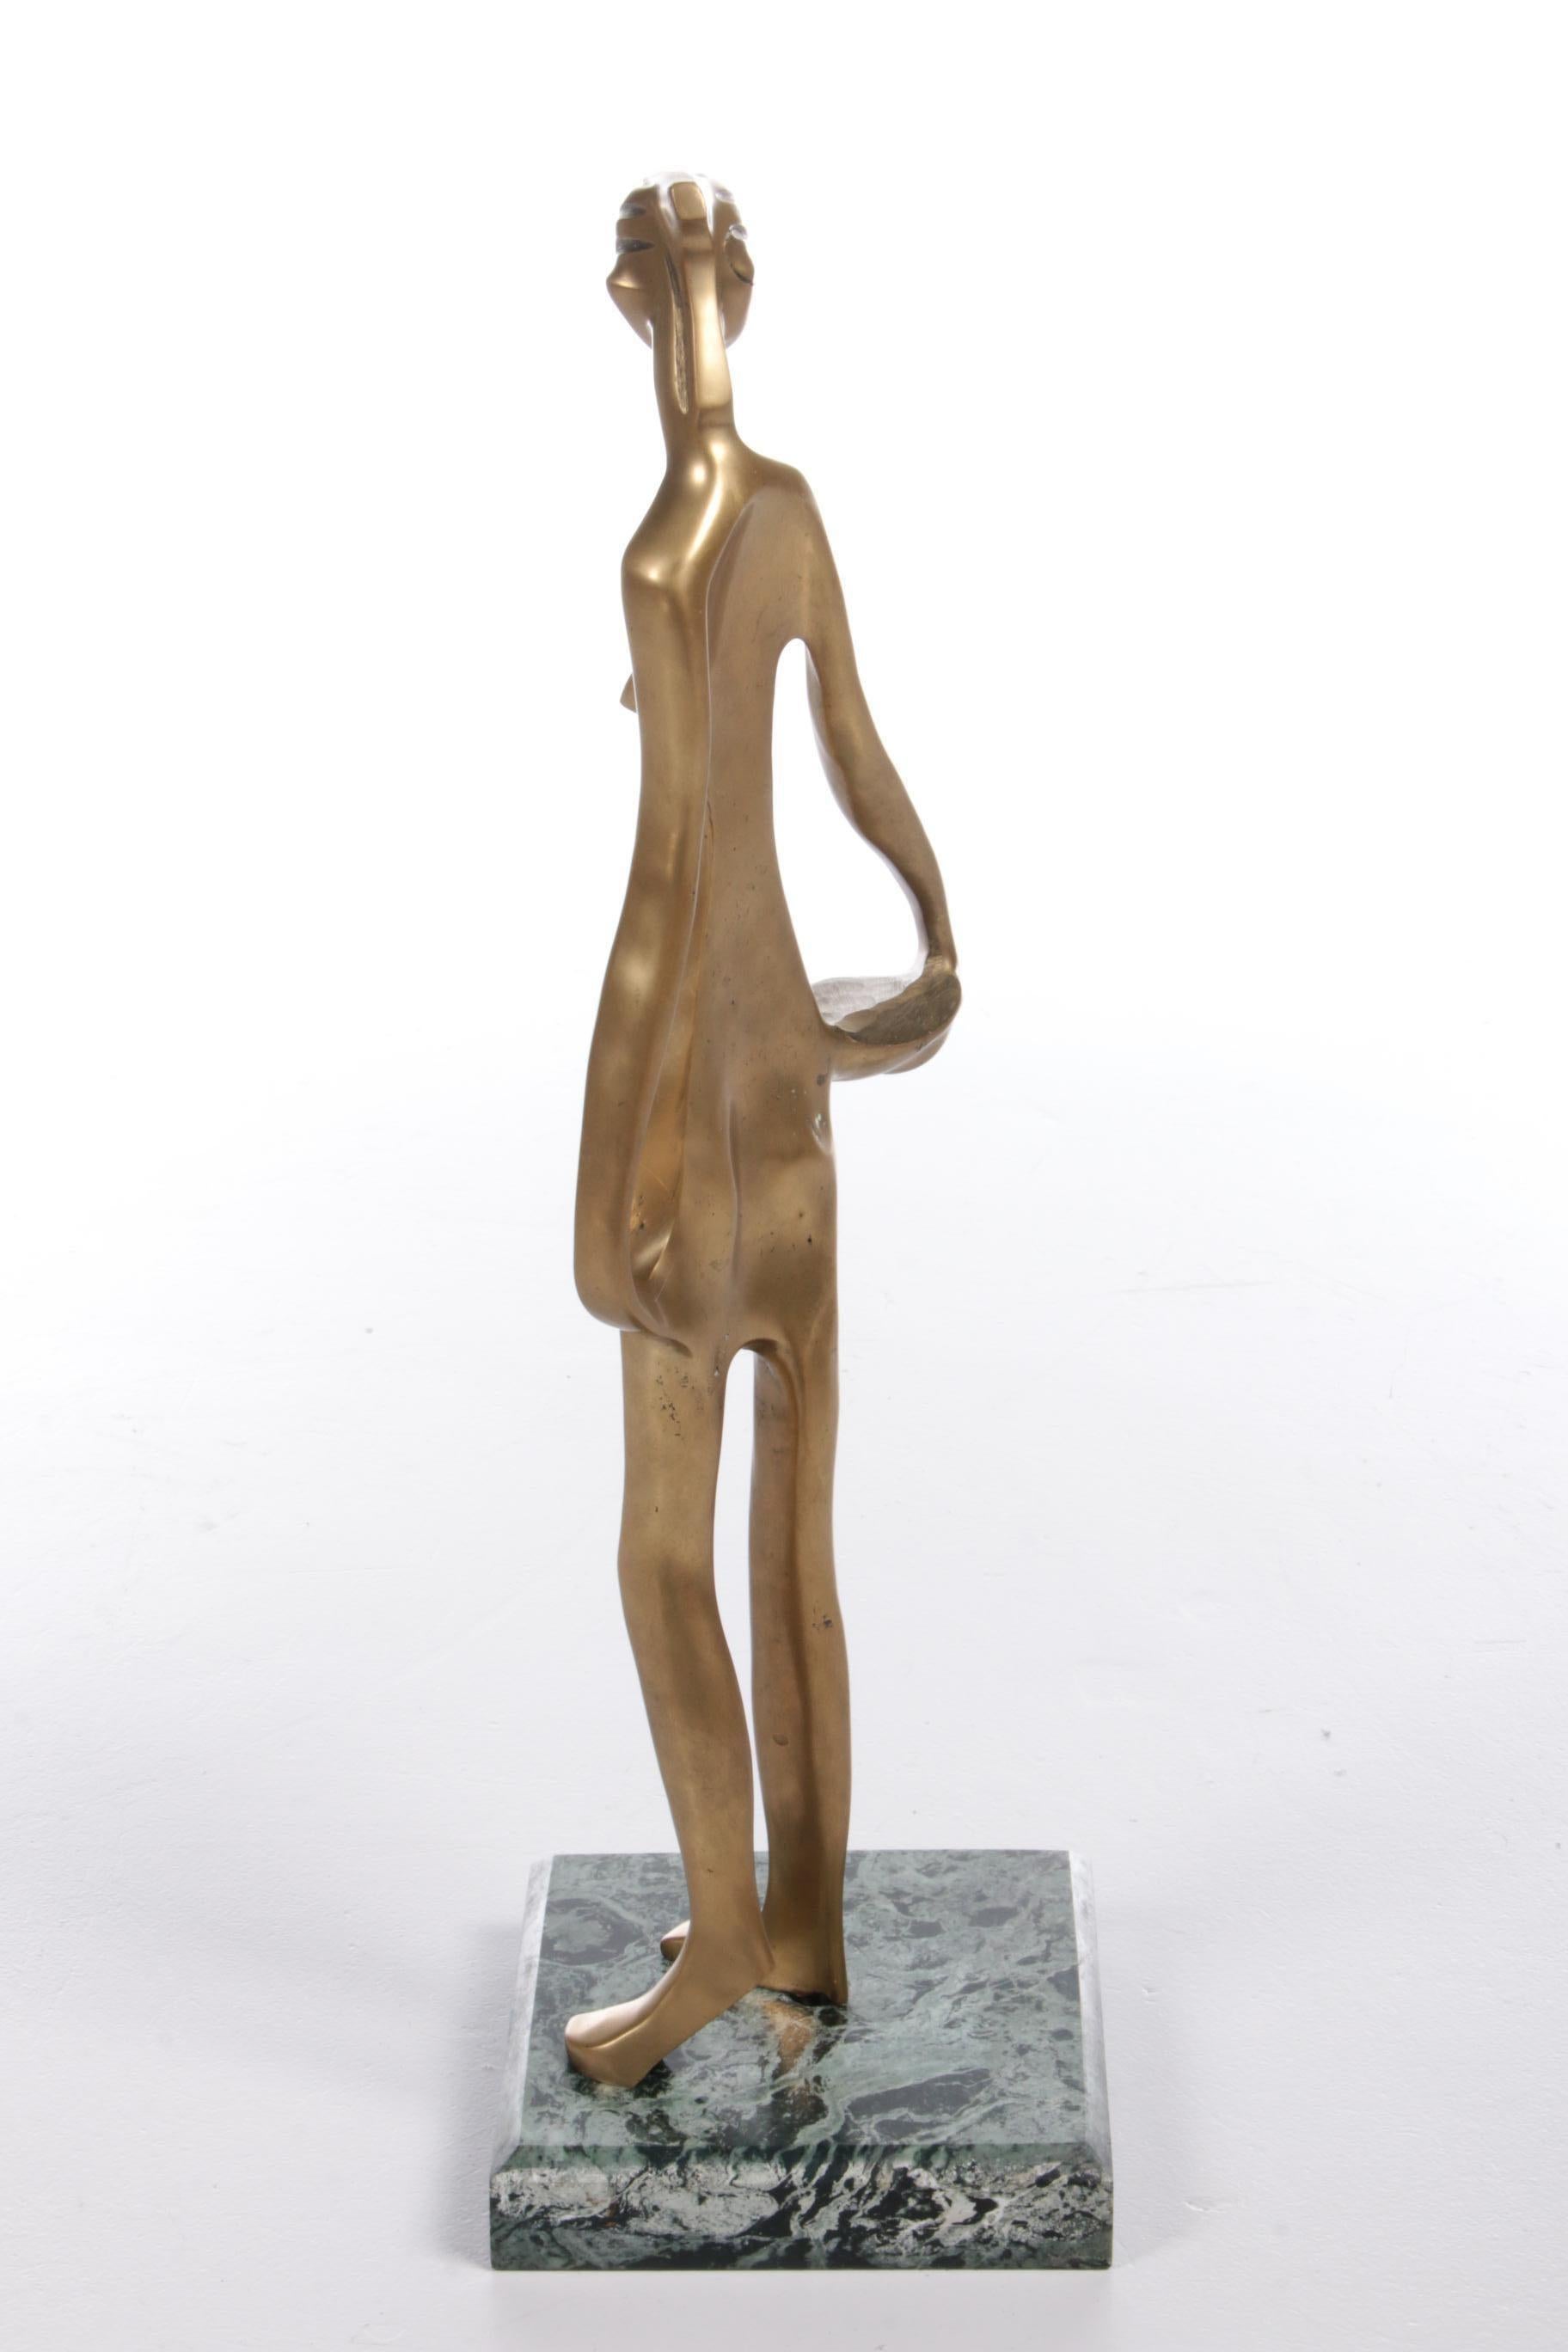 Une belle statue en laiton de couleur or. Il s'agit de la représentation d'une figure féminine africaine.

La statue est réalisée dans le style de Franz Hagenauer, qui a lui-même conçu de nombreuses statues africaines et est connu pour ses œuvres